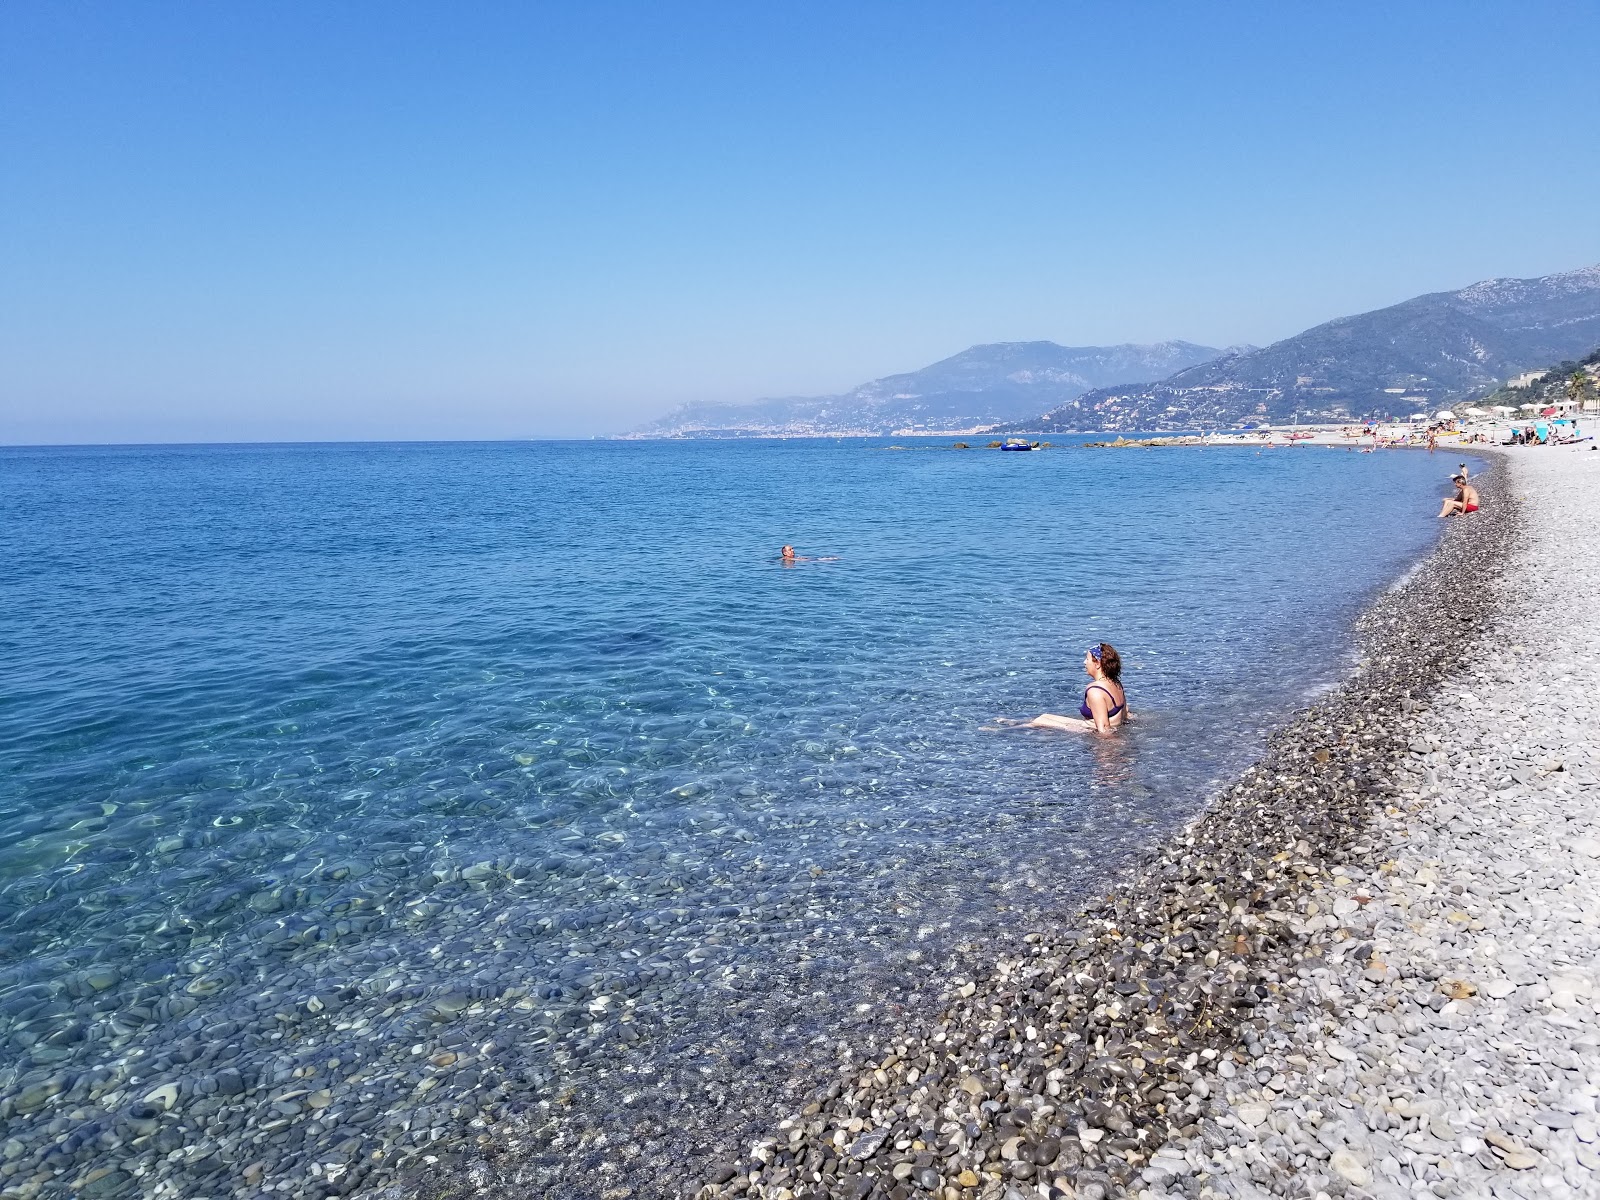 Foto von Spiaggia Ventimiglia mit grauer kies Oberfläche